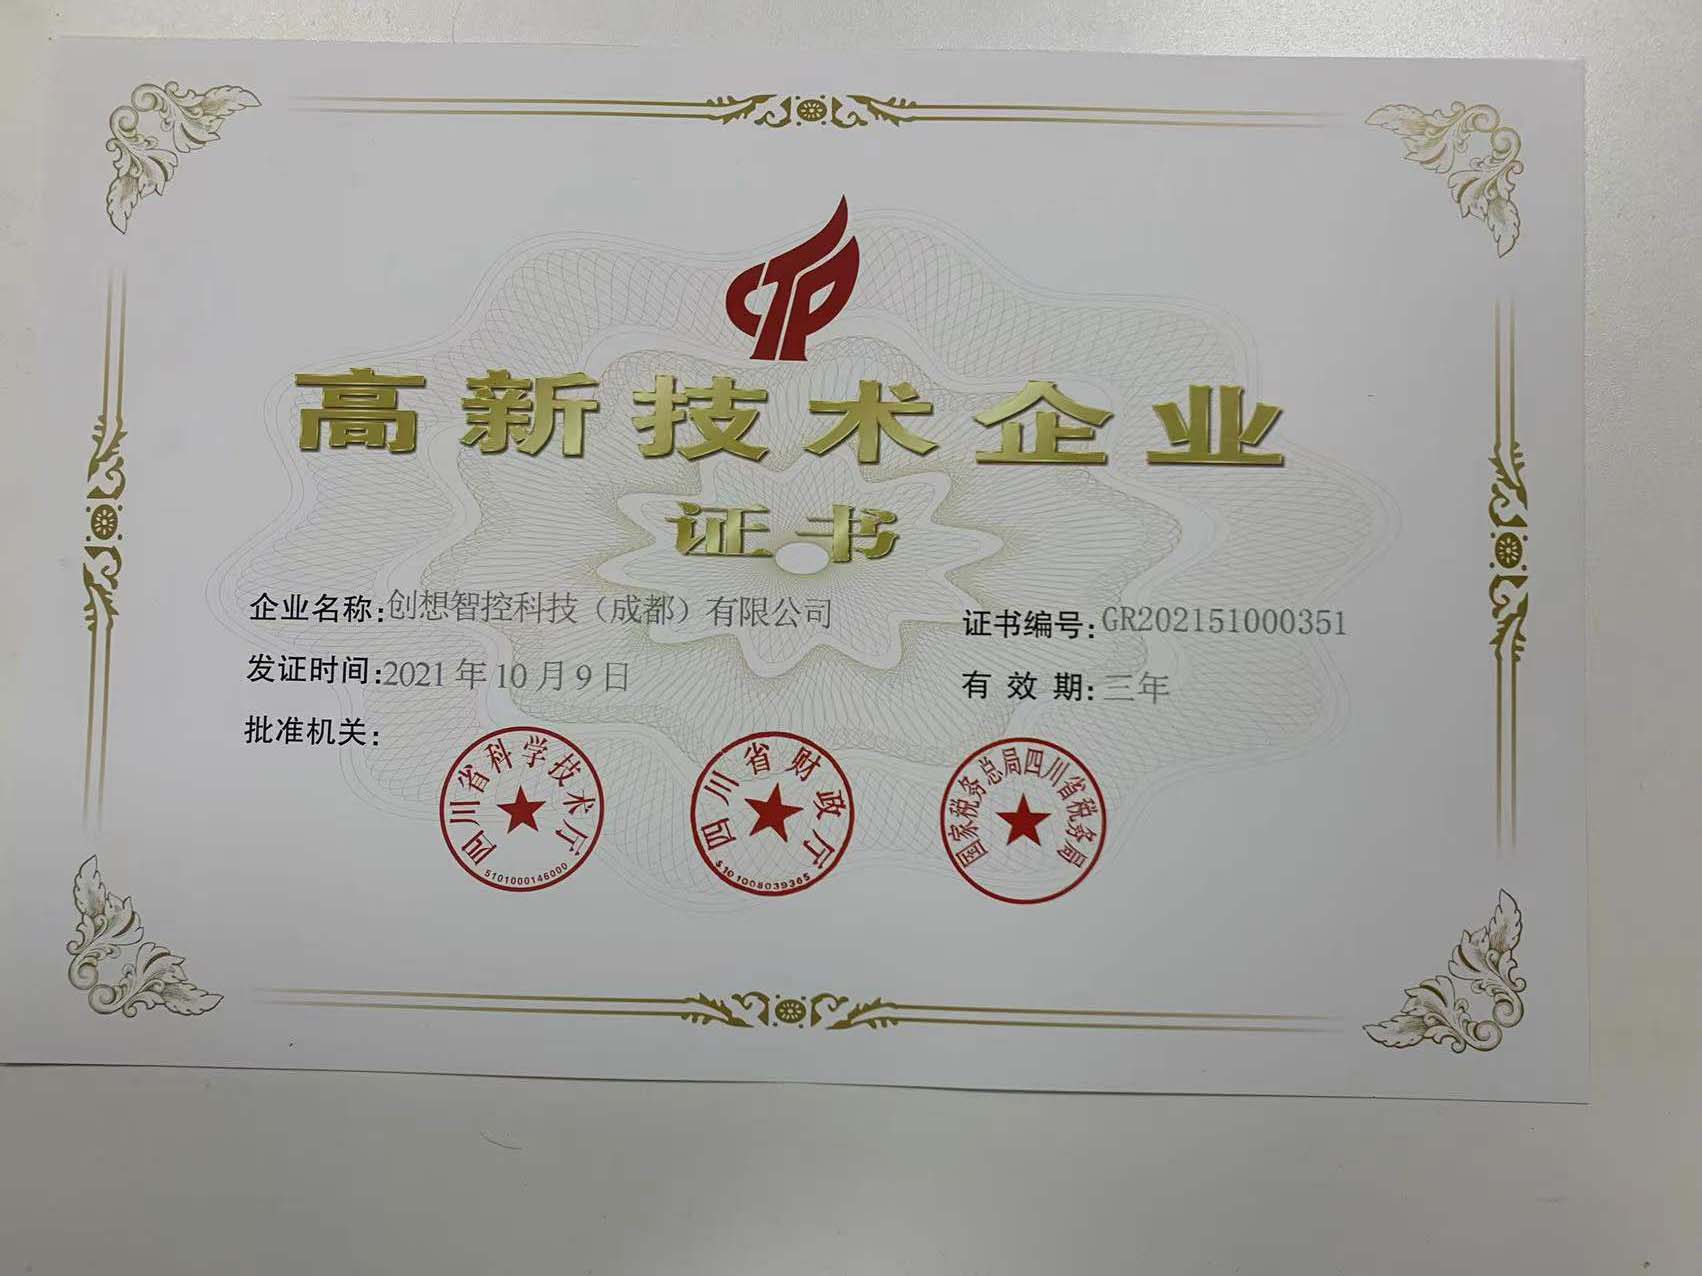 太阳成集团tyc7111cc成都子公司荣获高新技术企业证书